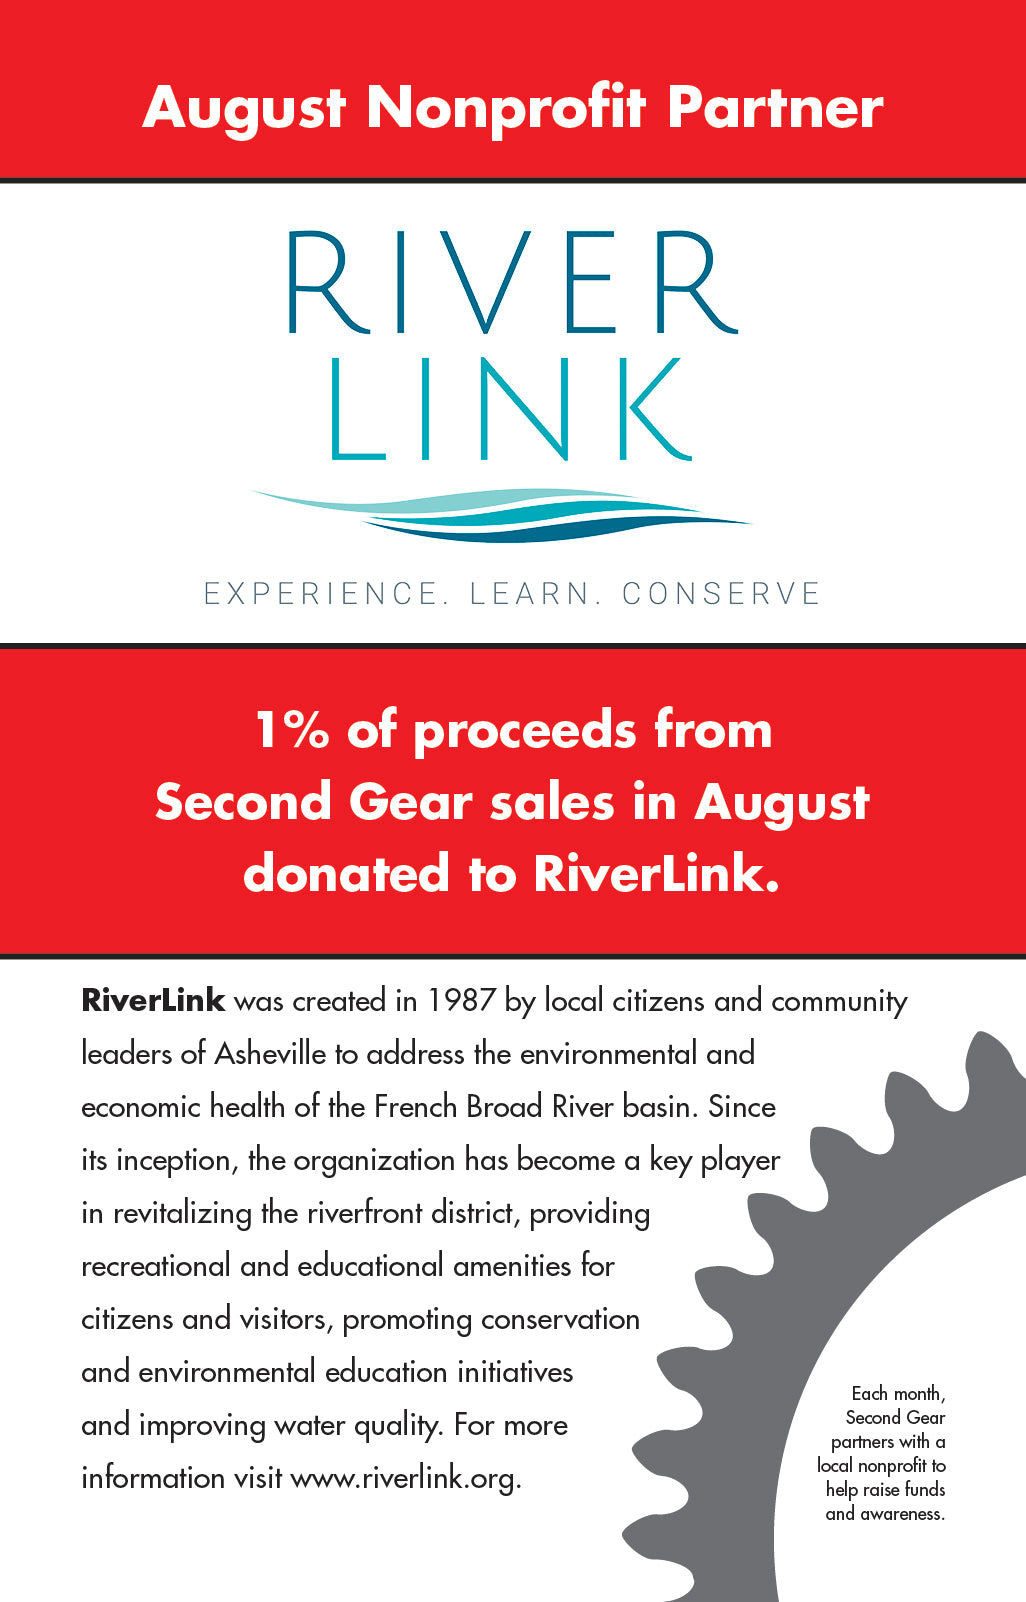 August Non-Profit: RiverLink